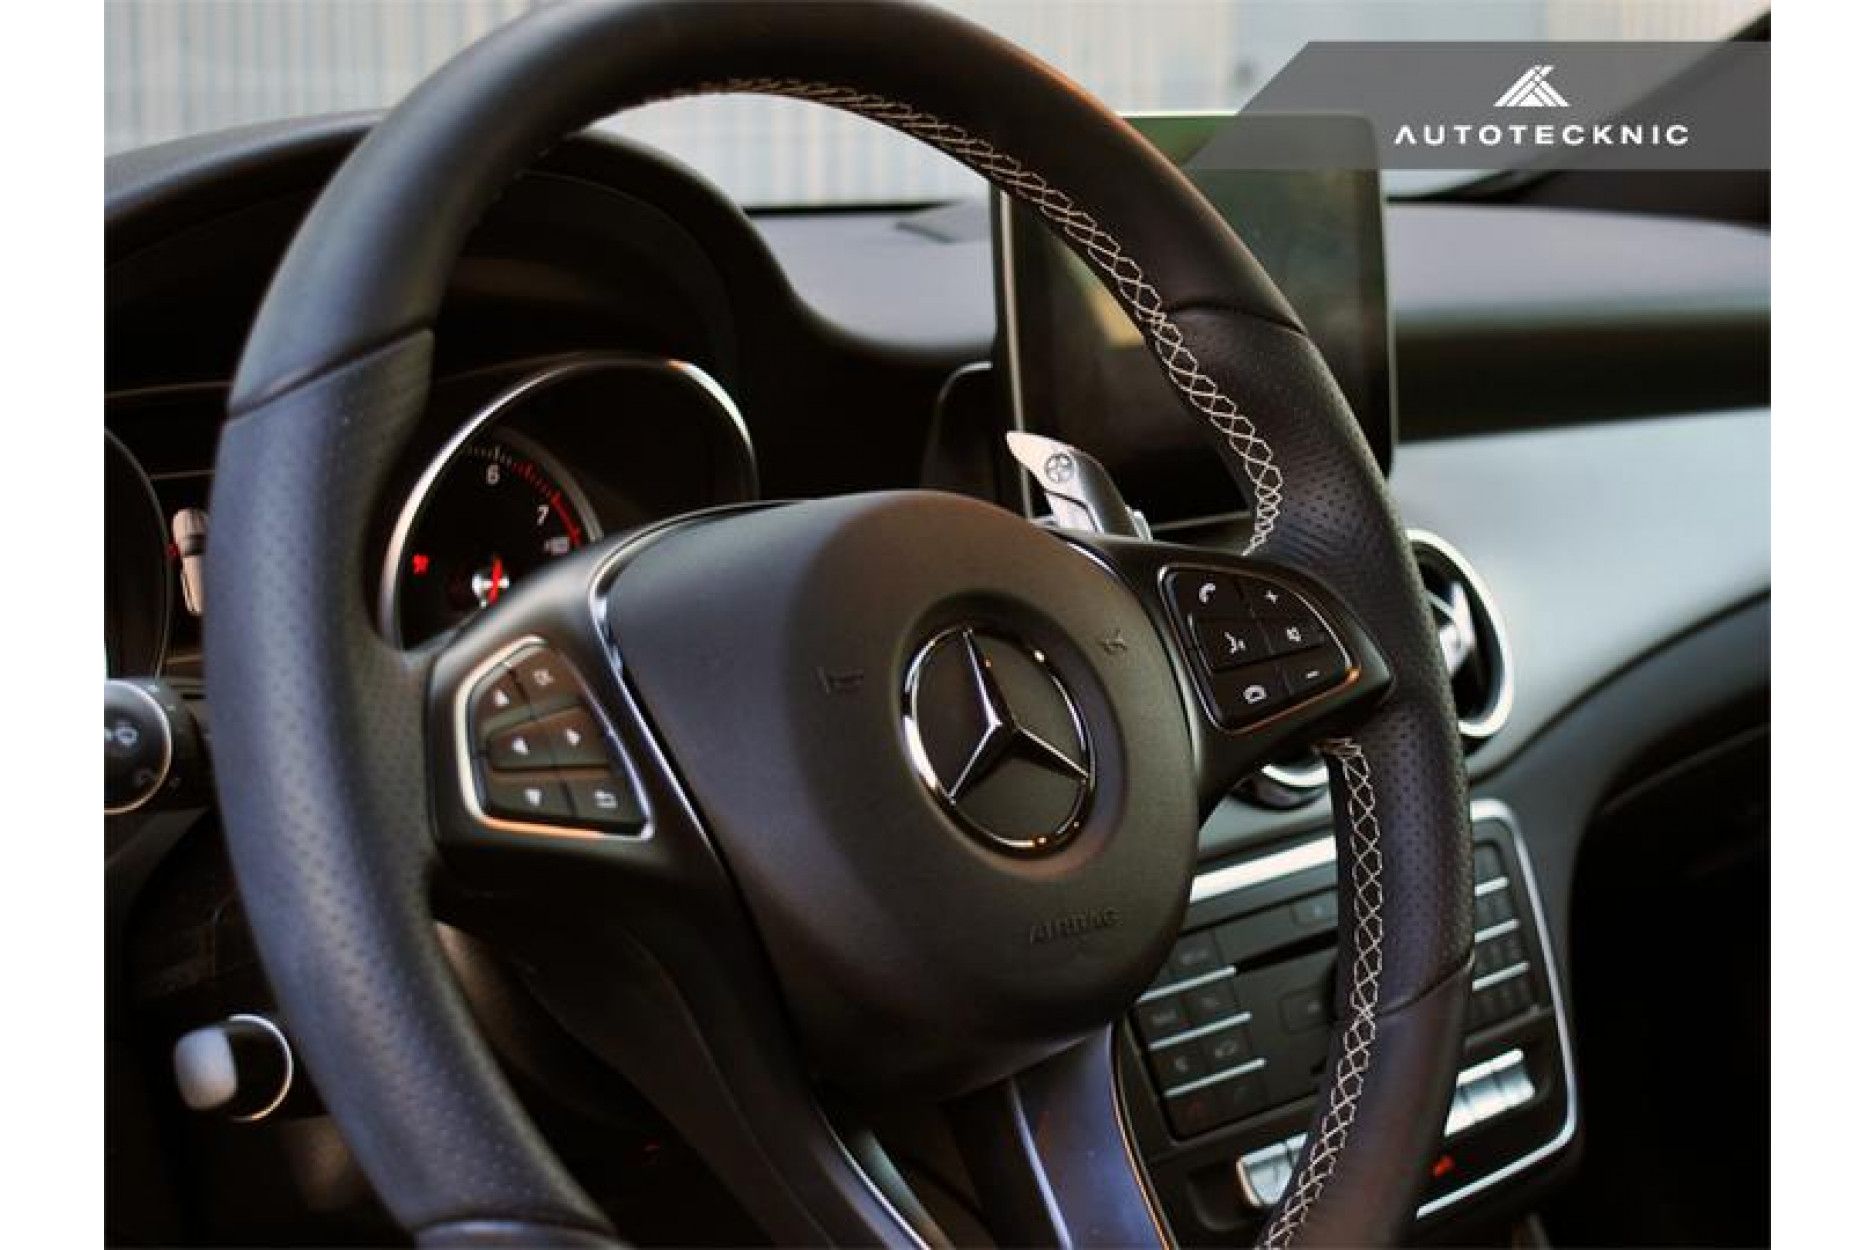 Autotecknic Aluminium Schaltwippen für Mercedes Benz kein AMG